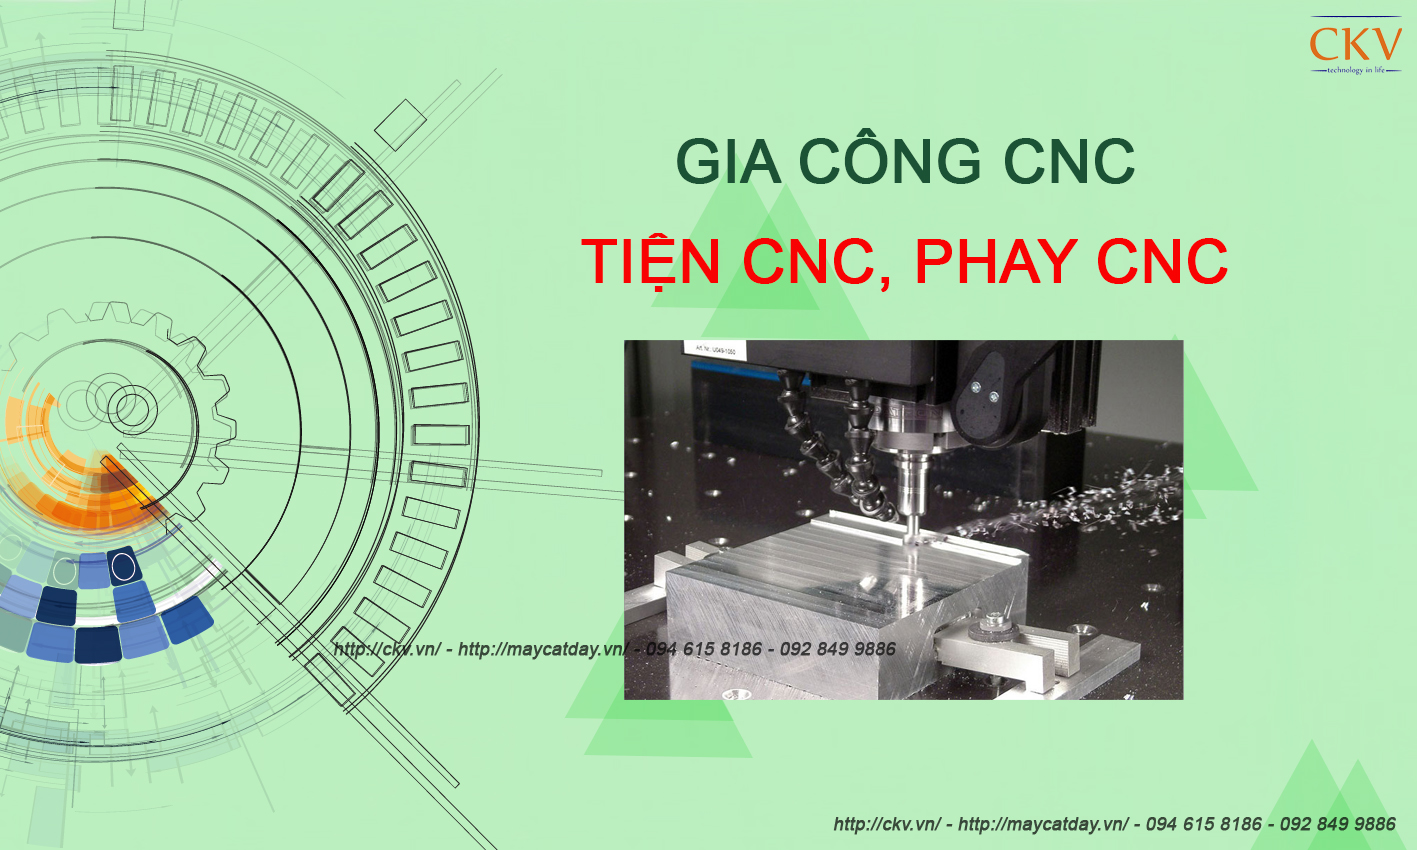 Gia công CNC, tiện CNC, phay CNC